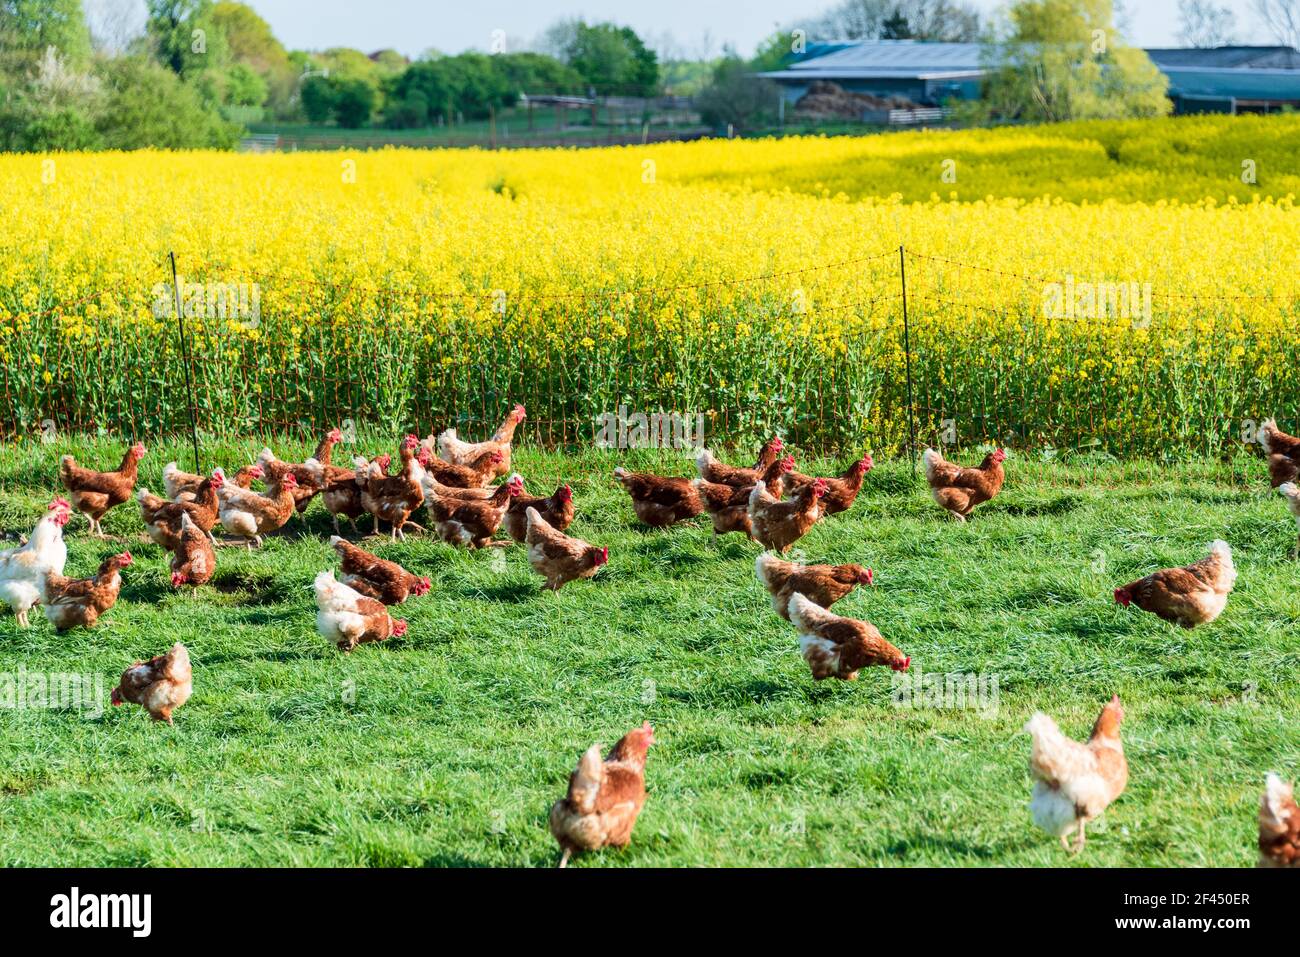 Artgerechte Tierhaltung in Schleswig-Holstein. Frei laufende Hühner auf einer Wiese in Moorsee bei Kiel Stock Photo